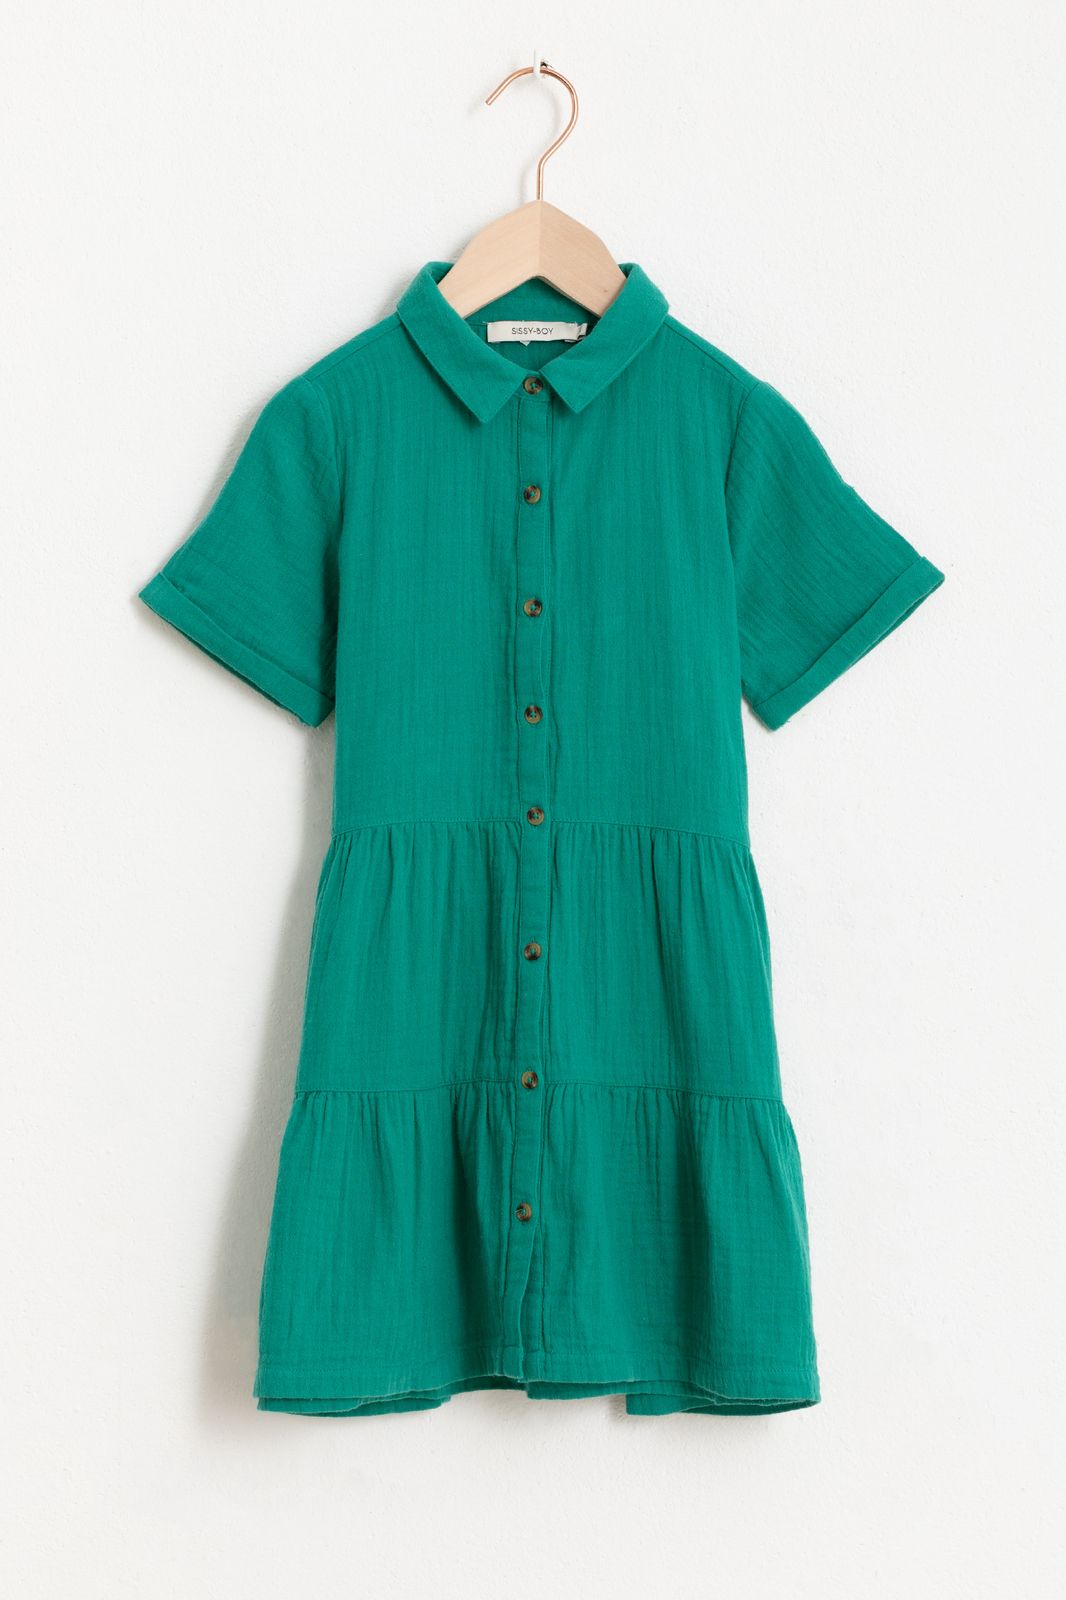 Kurzarm-Kleid mit Rüschen-Details - grün